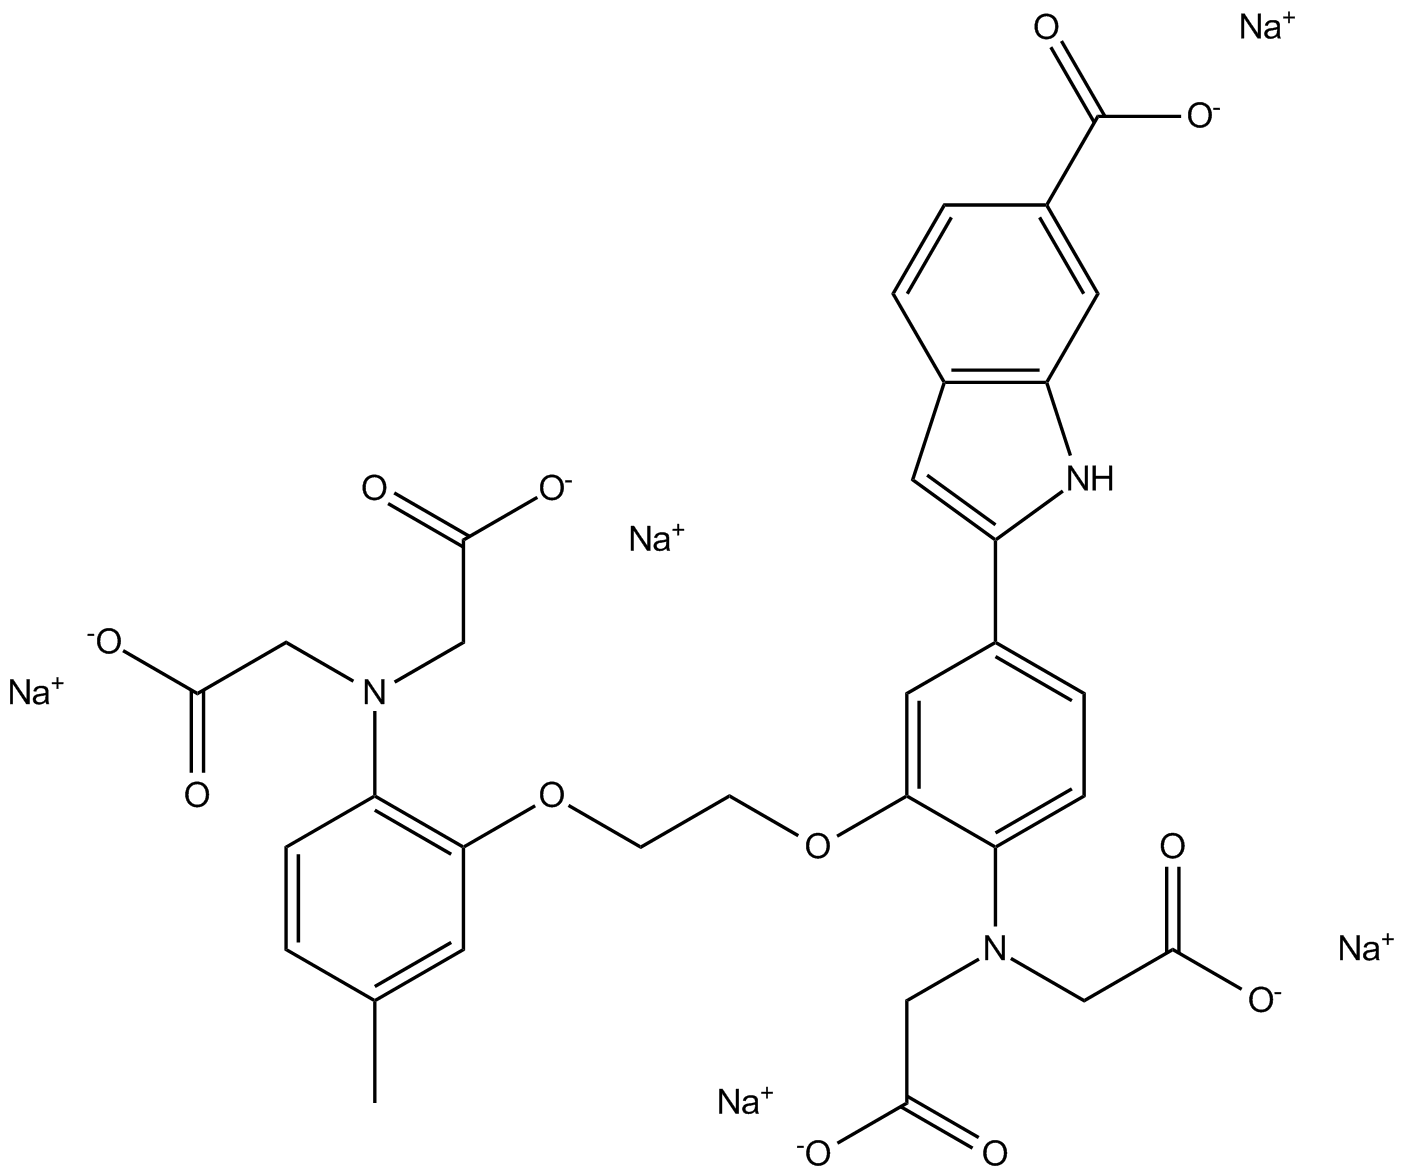 Indo-1 (sodium salt)